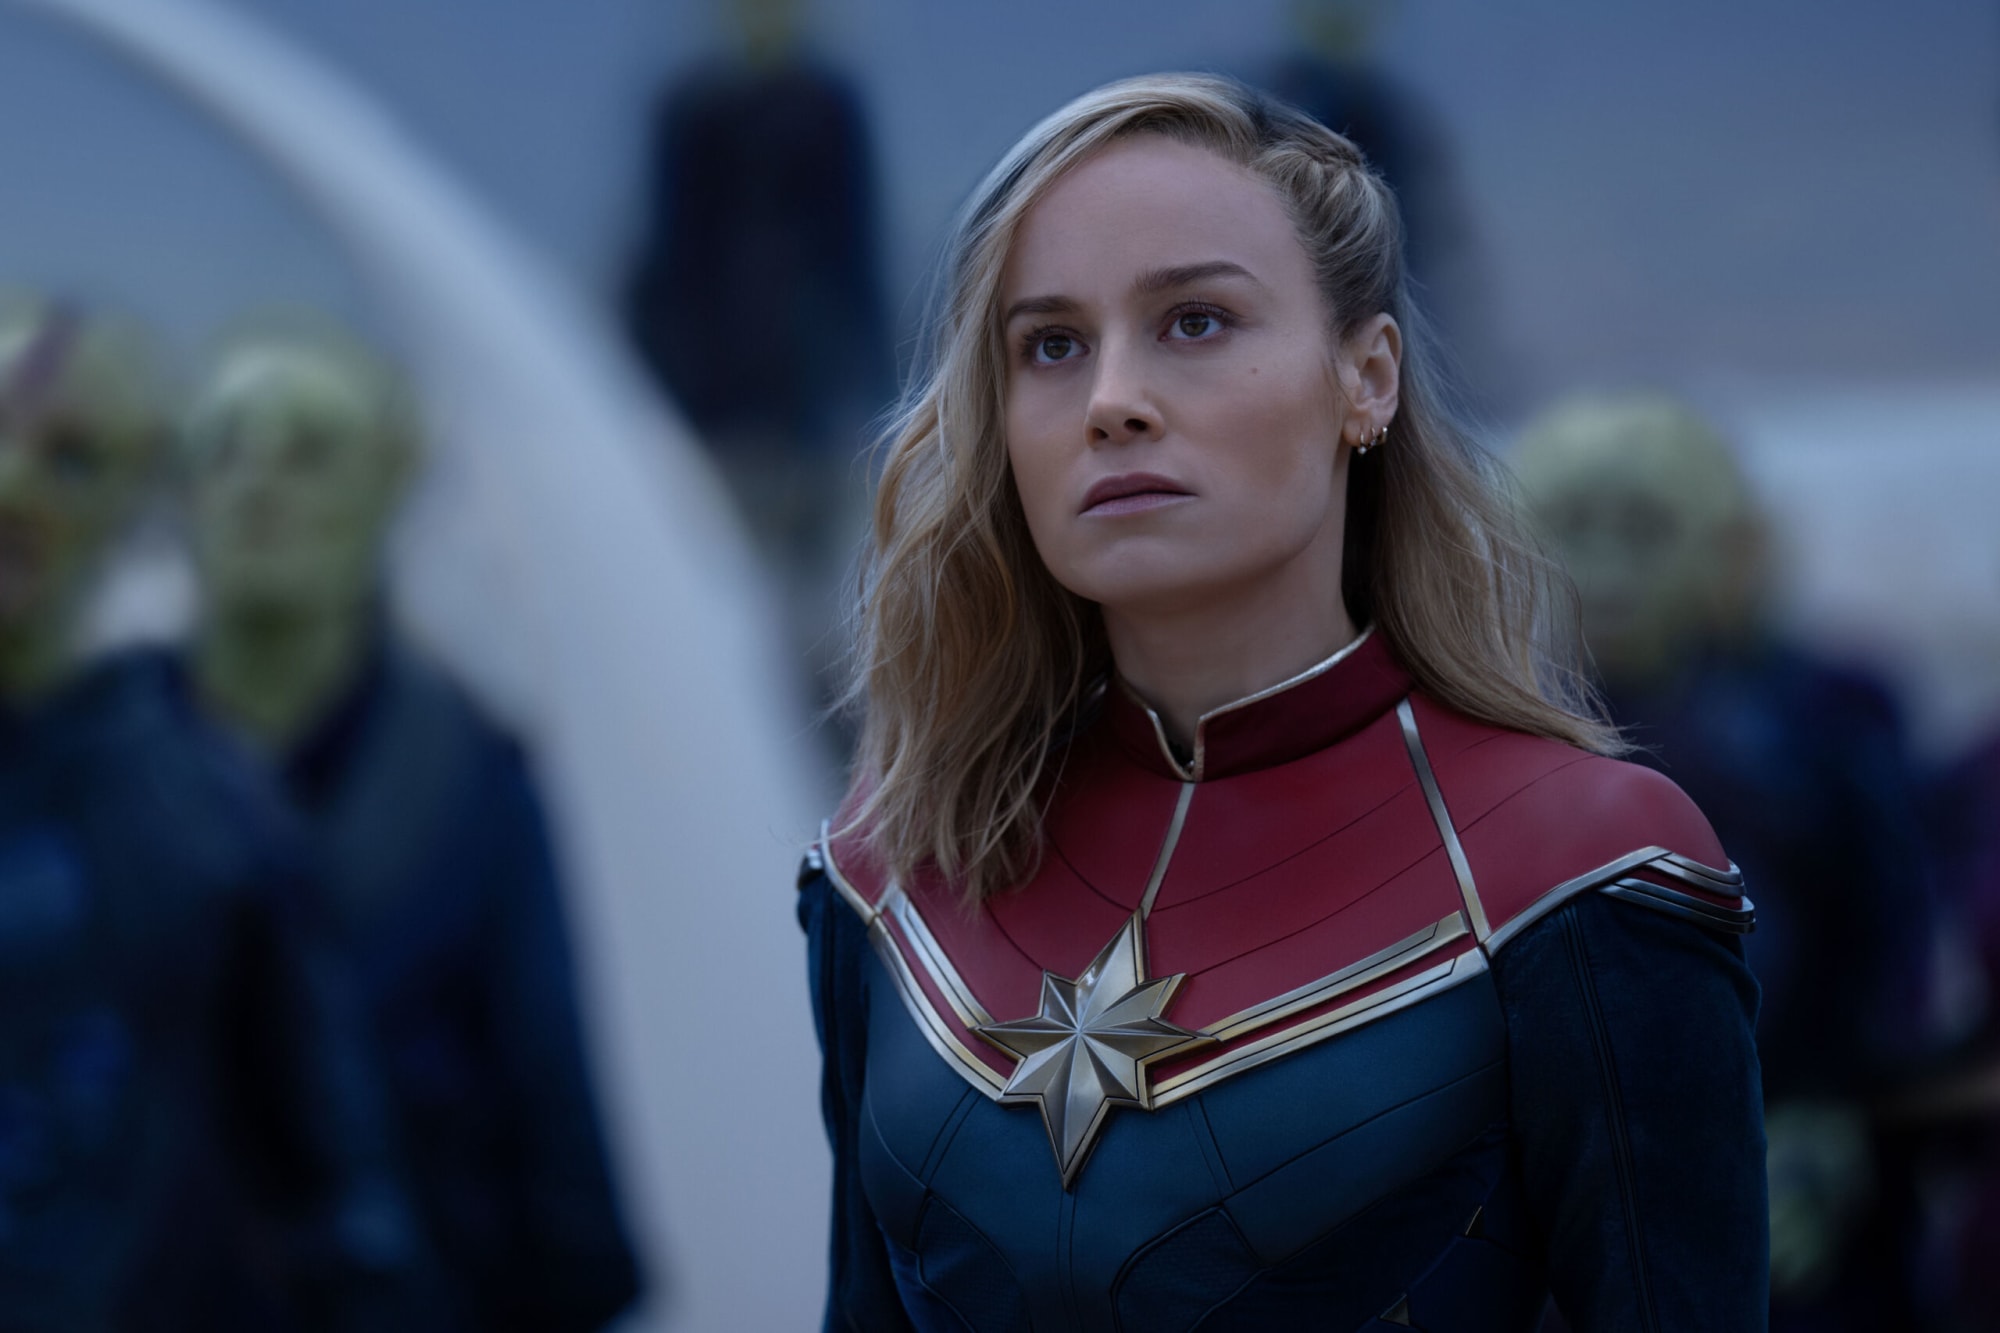 THE MARVELS - Teaser Trailer (2023) Brie Larson Captain Marvel 2 Movie